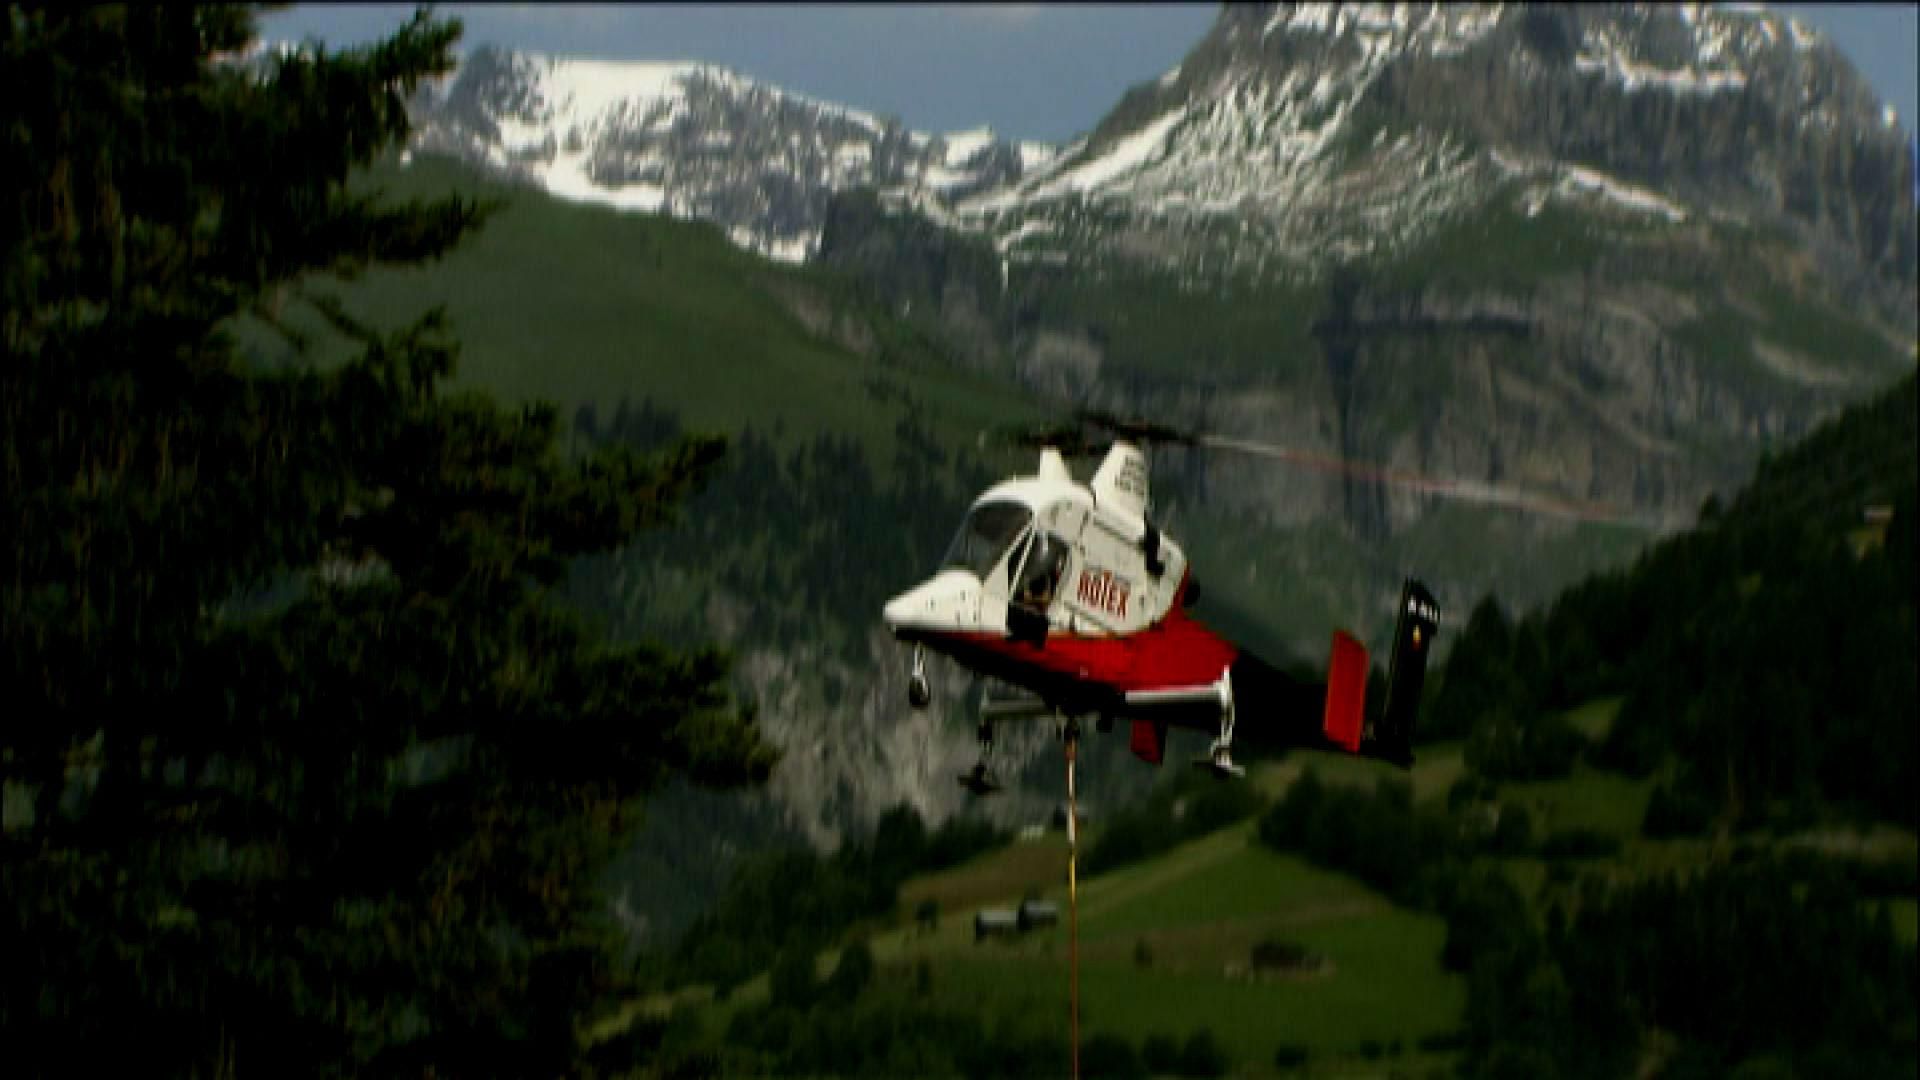 Единственный вертолет в мире с двумя перекрещивающимися тяговыми винтами